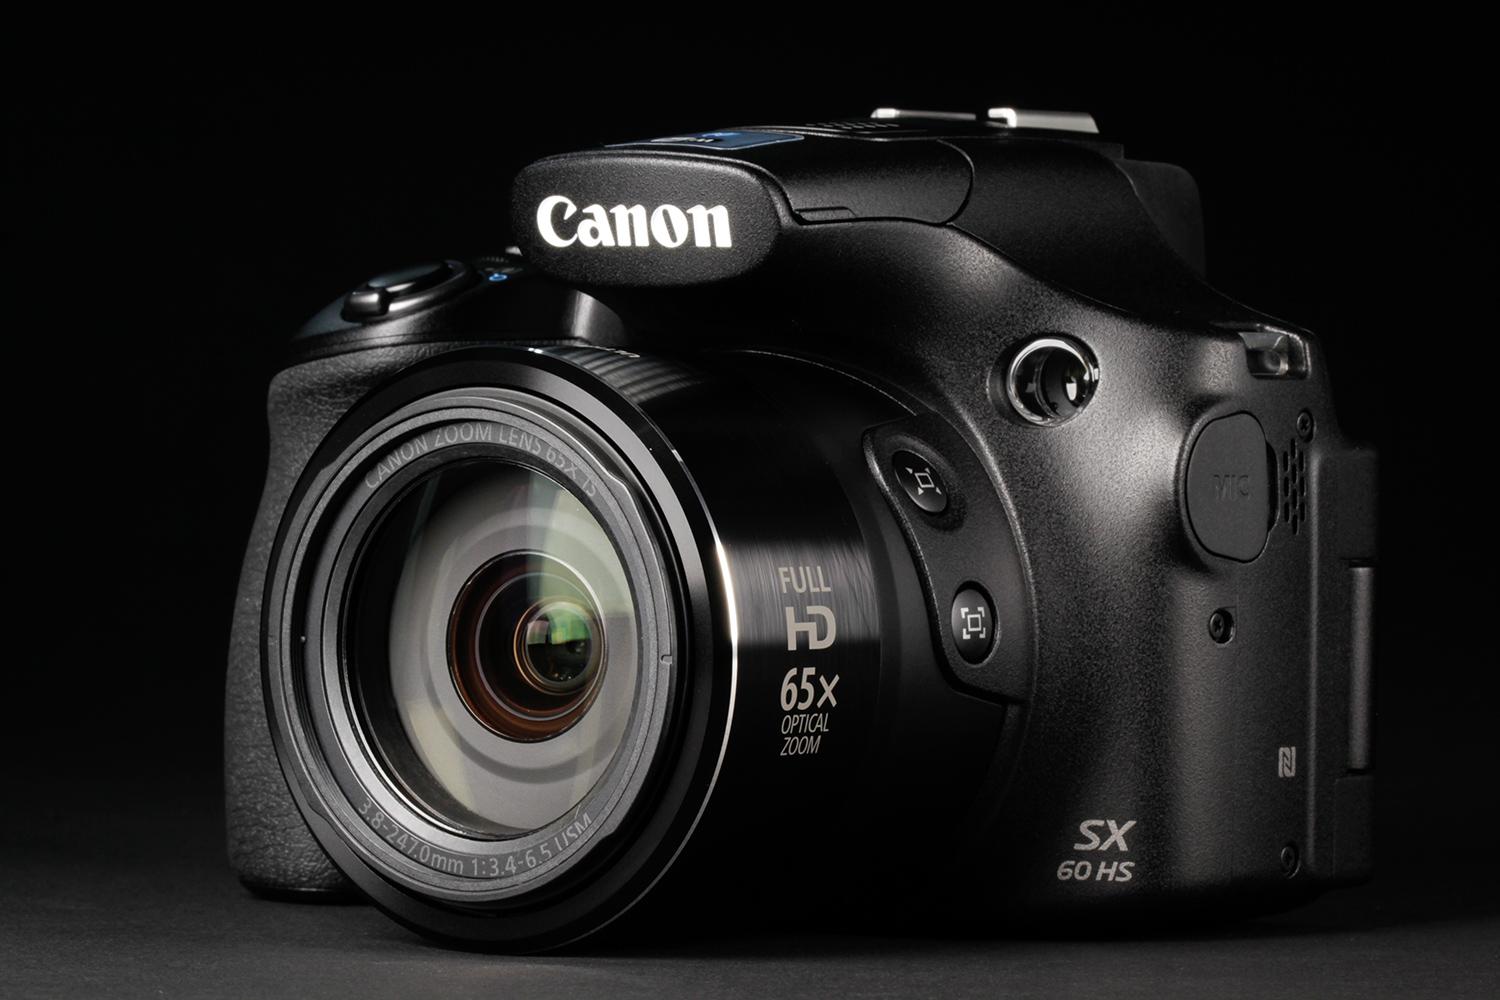 Establishment extract guide Canon PowerShot SX60 HS review | Digital Trends